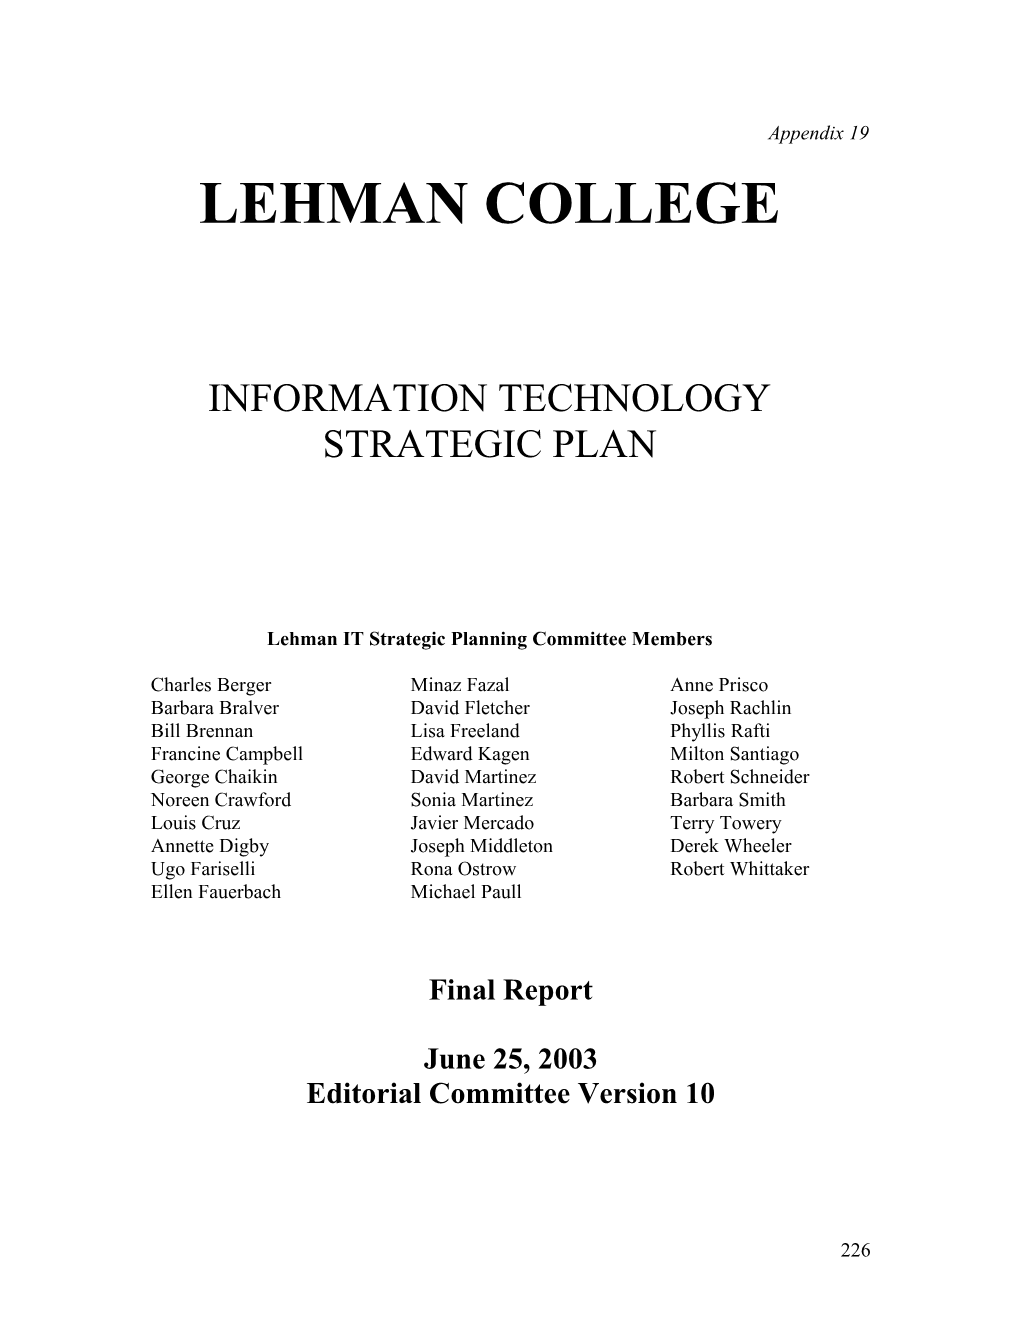 Lehman IT Strategic Planning Committee Members